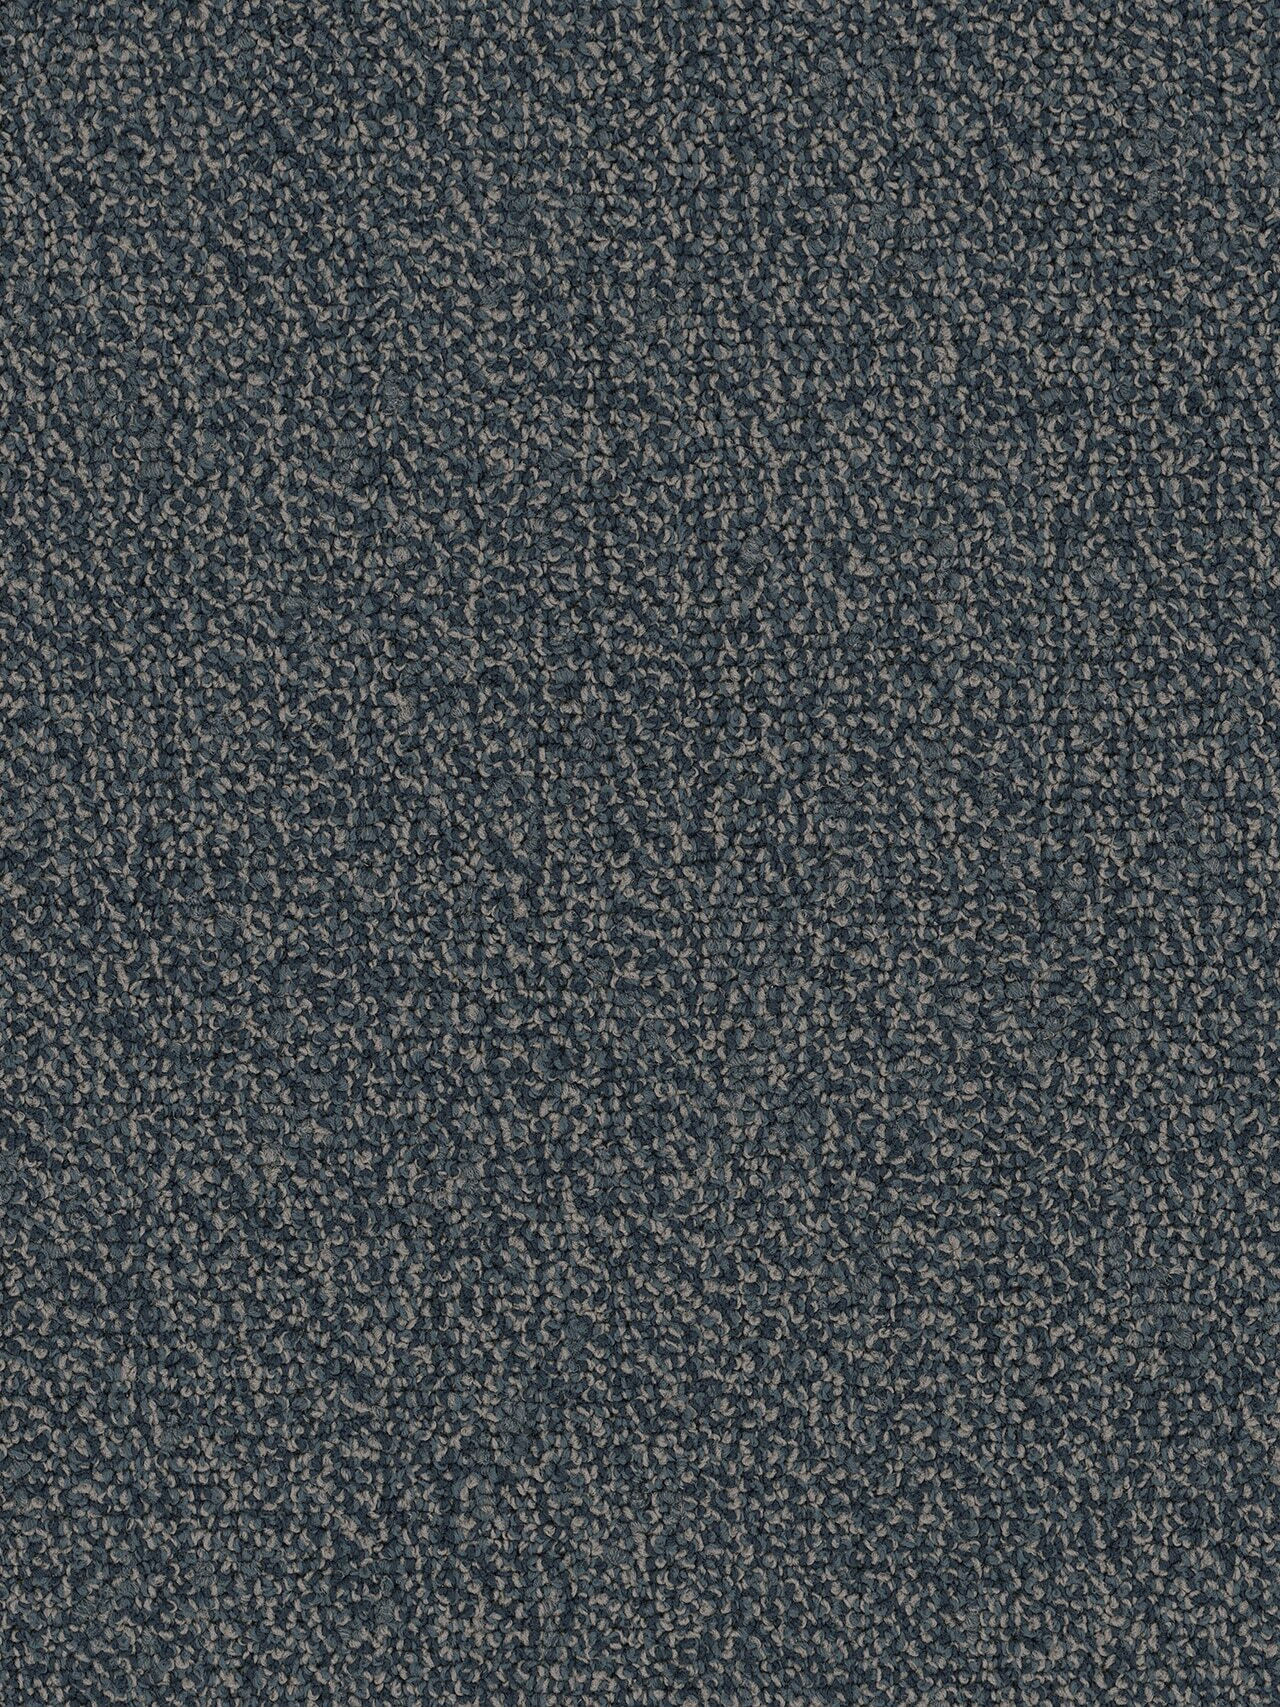 Pentz Chivalry Carpet Tile Justice 24" x 24" Premium (72 sq ft/ctn)